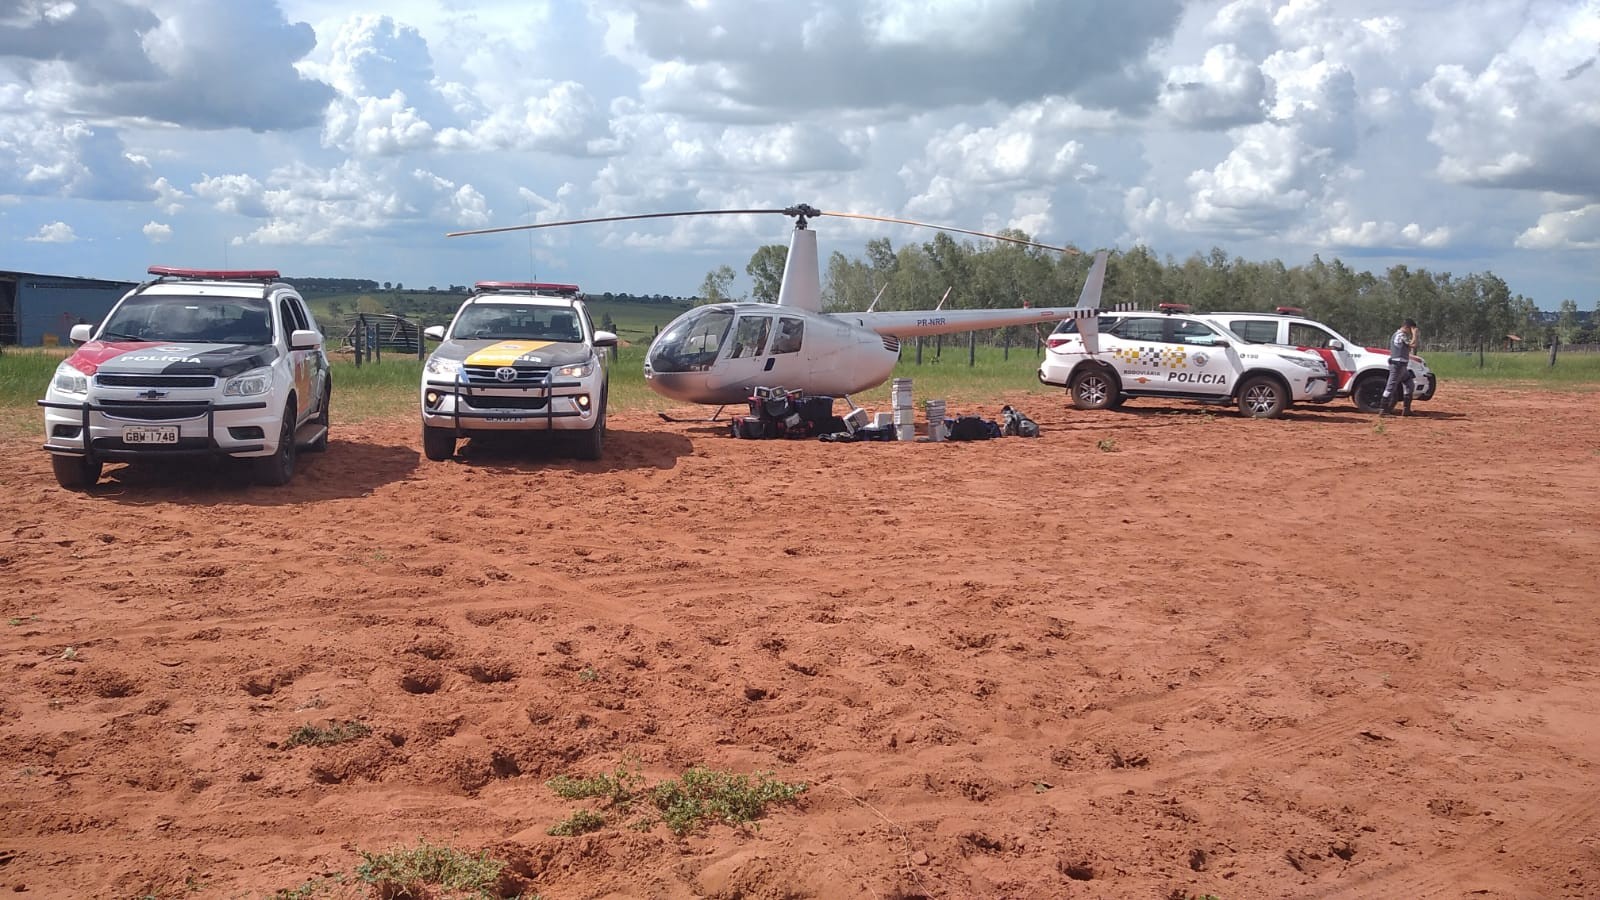 Justiça Federal decreta prisão preventiva de homens flagrados com helicóptero com quase 250kg de cocaína